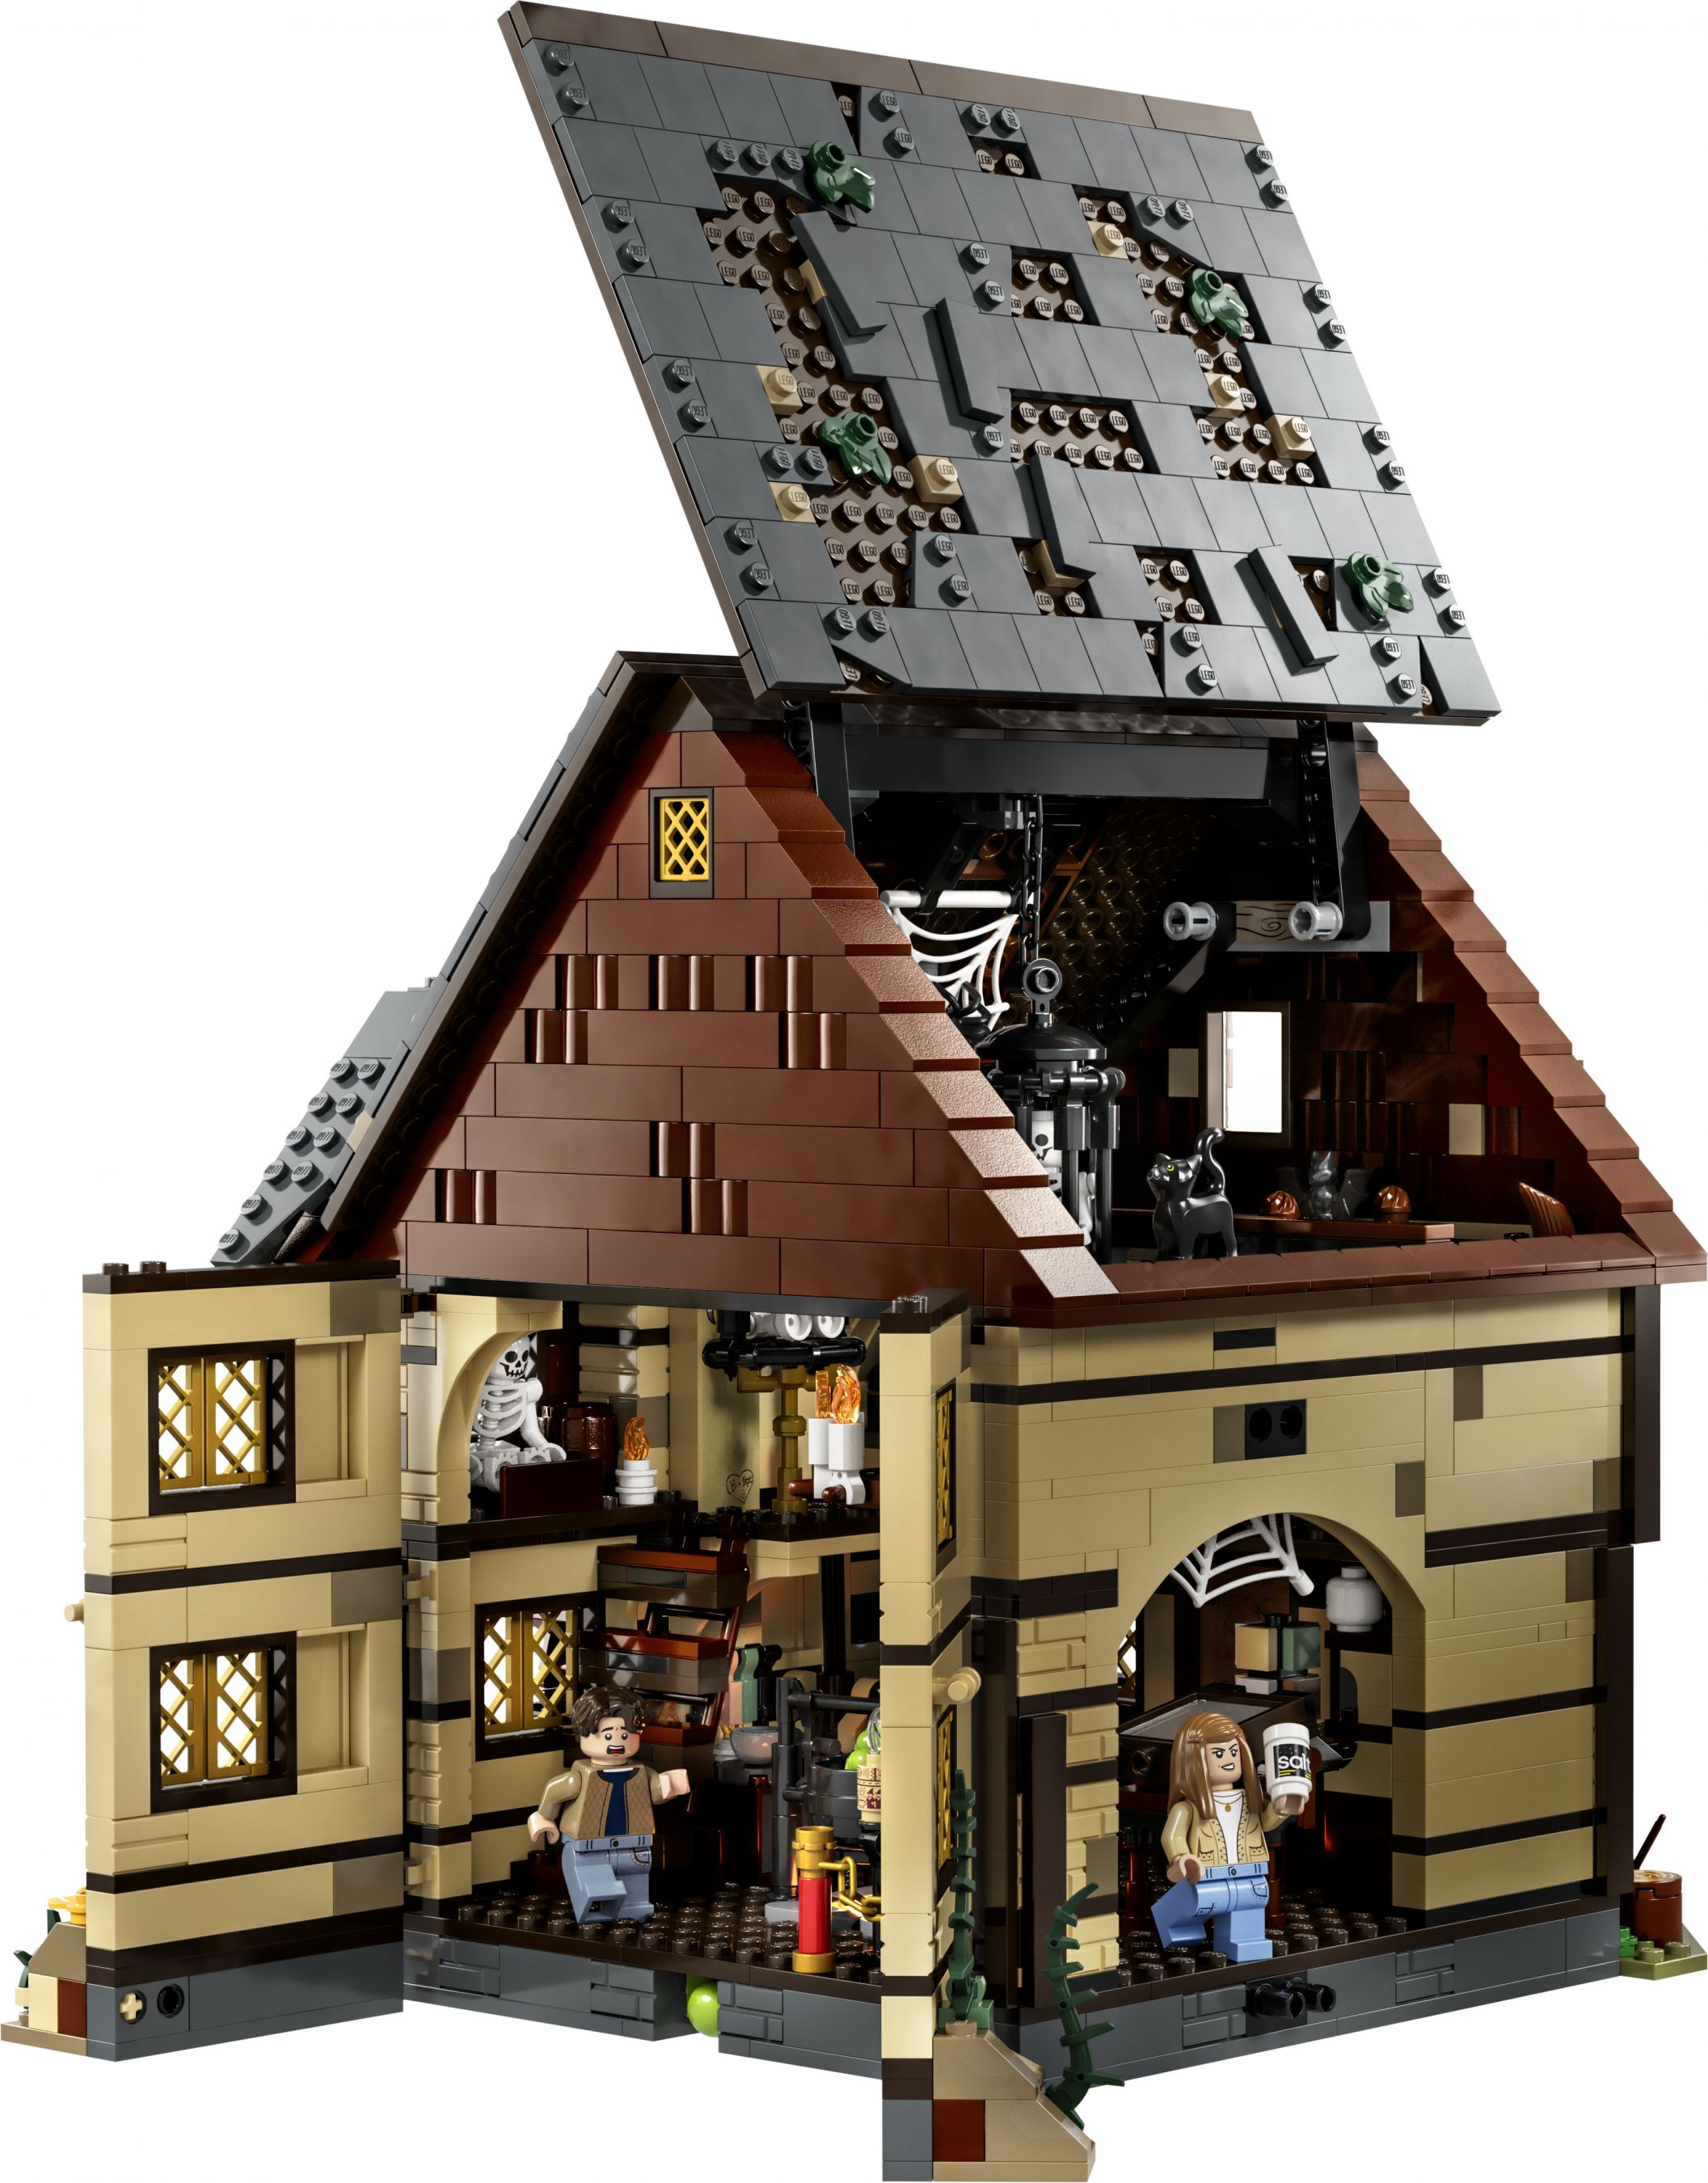 LEGO Ideas 21341 Disney Hocus Pocus: Das Hexenhaus der Sanderson-Schwestern LEGO_21341_Back_01_01.jpg